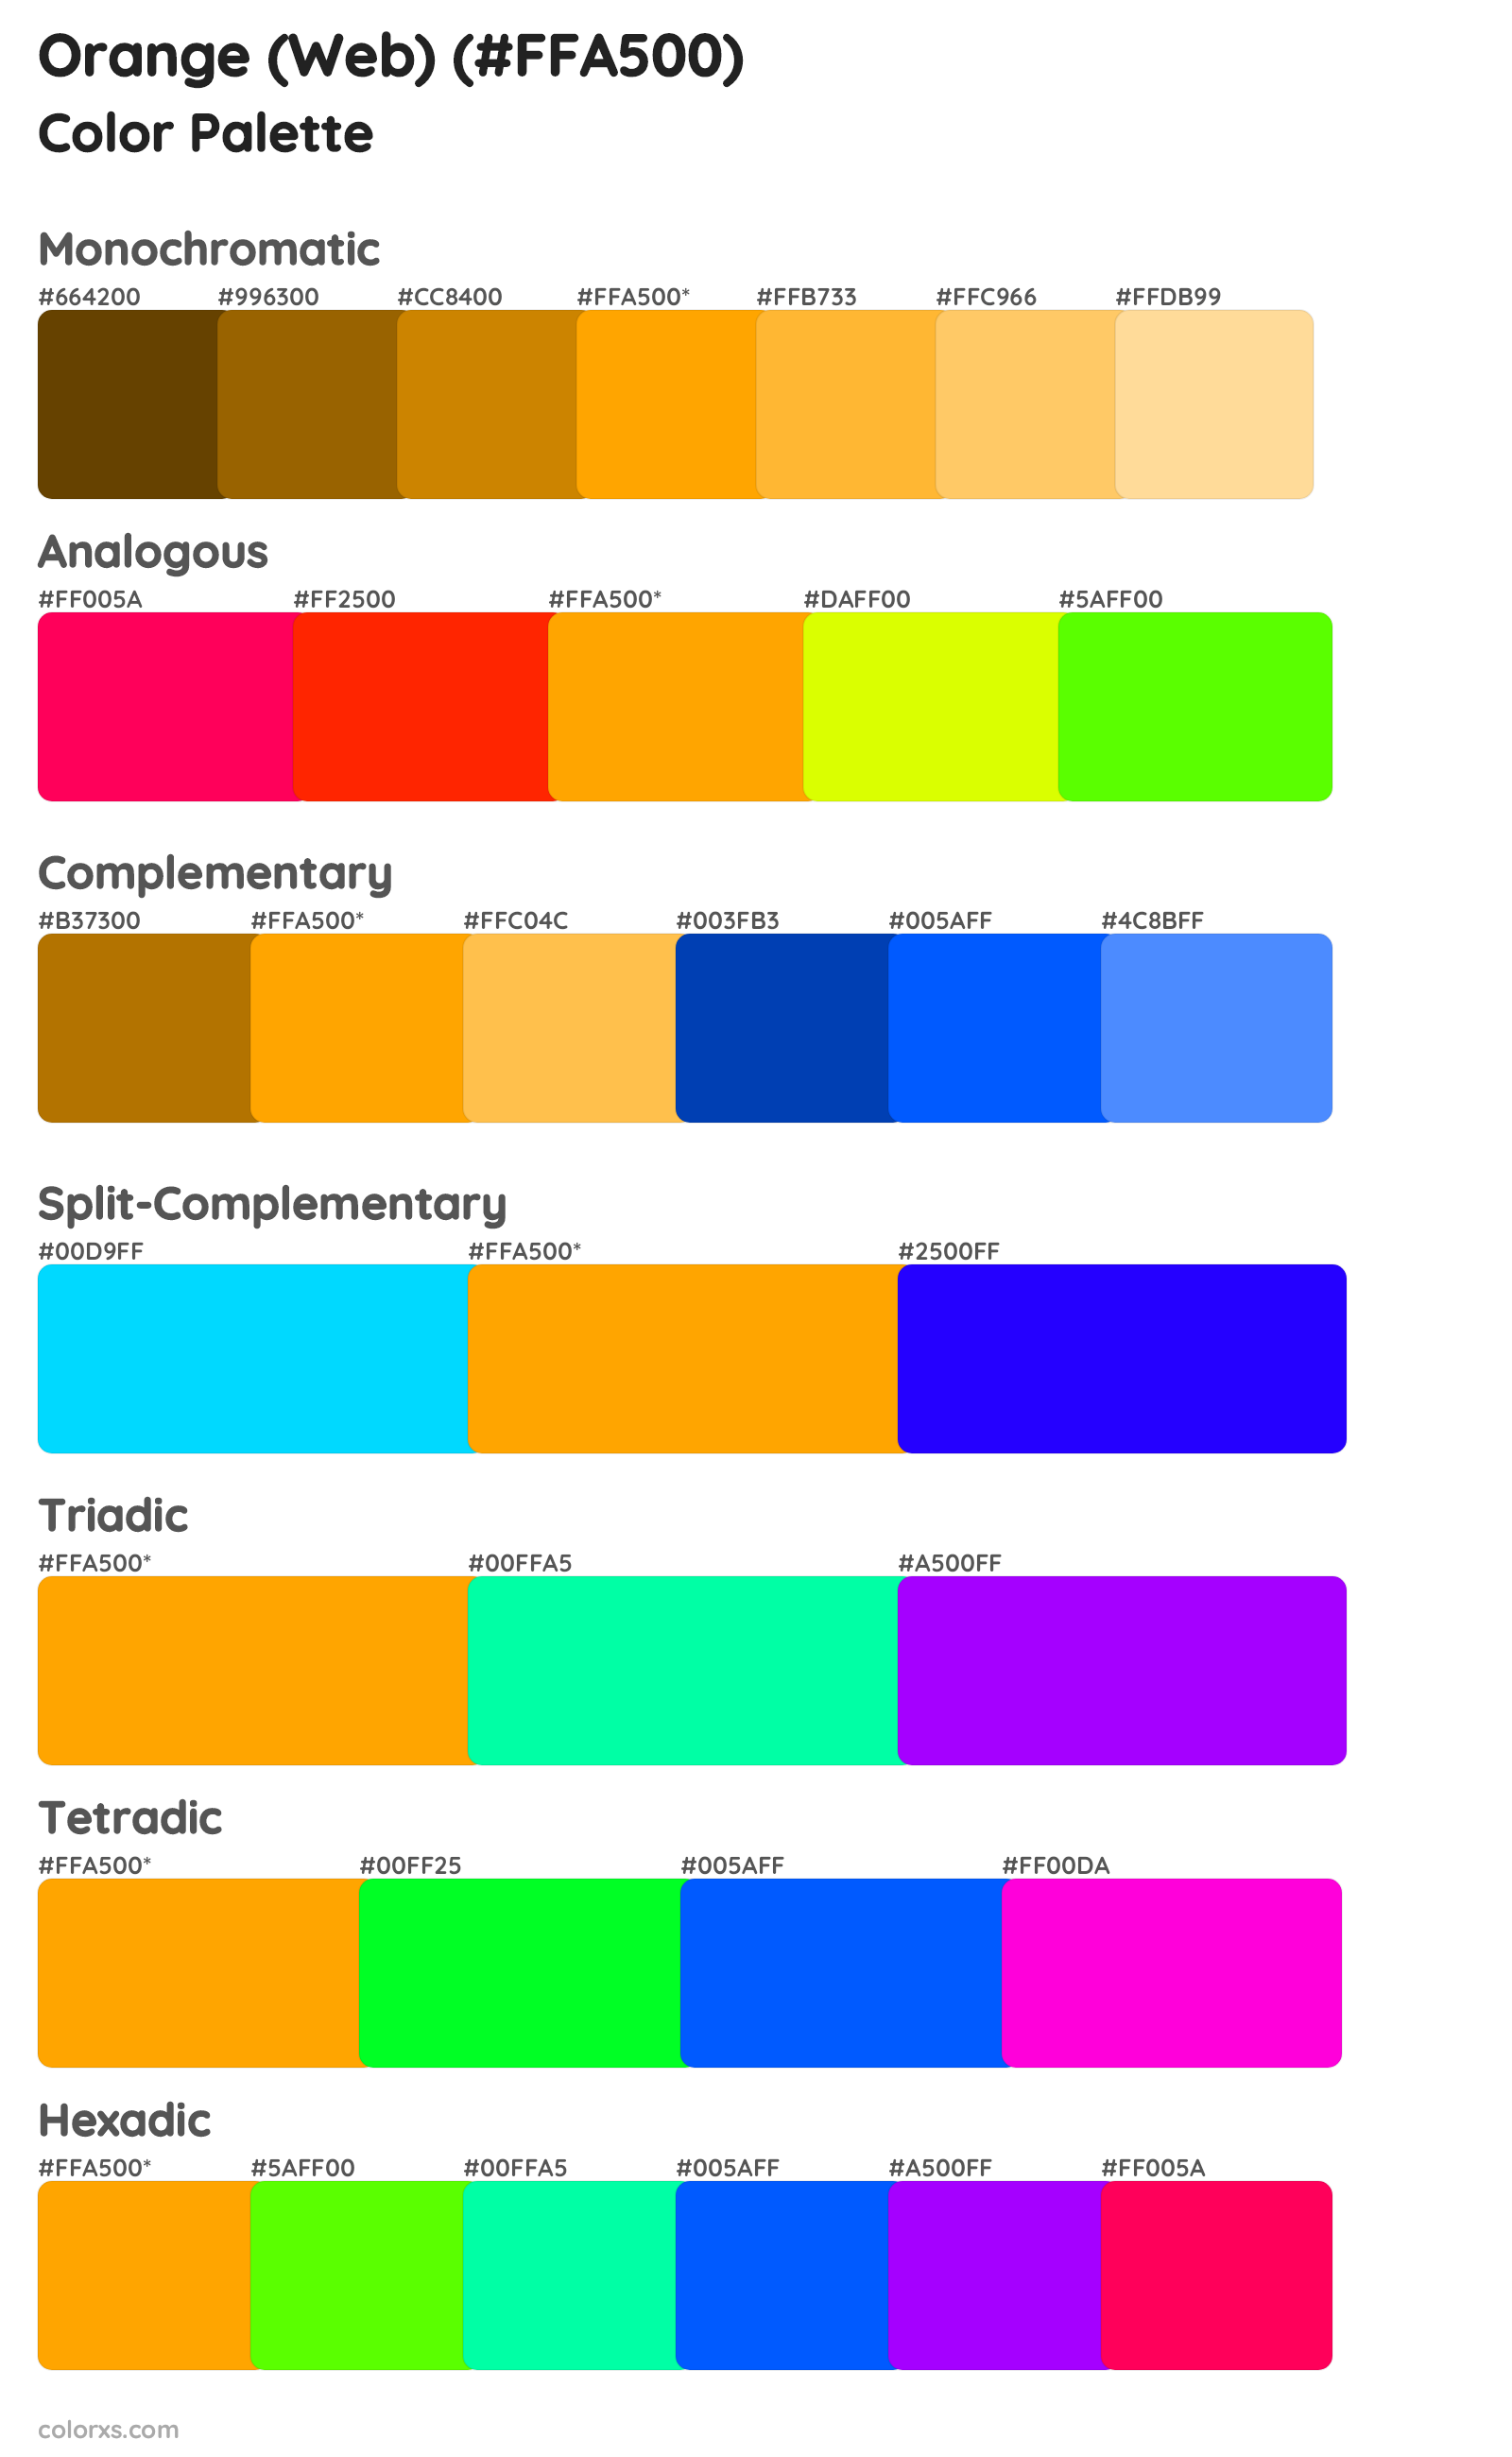 Orange (Web) Color Scheme Palettes